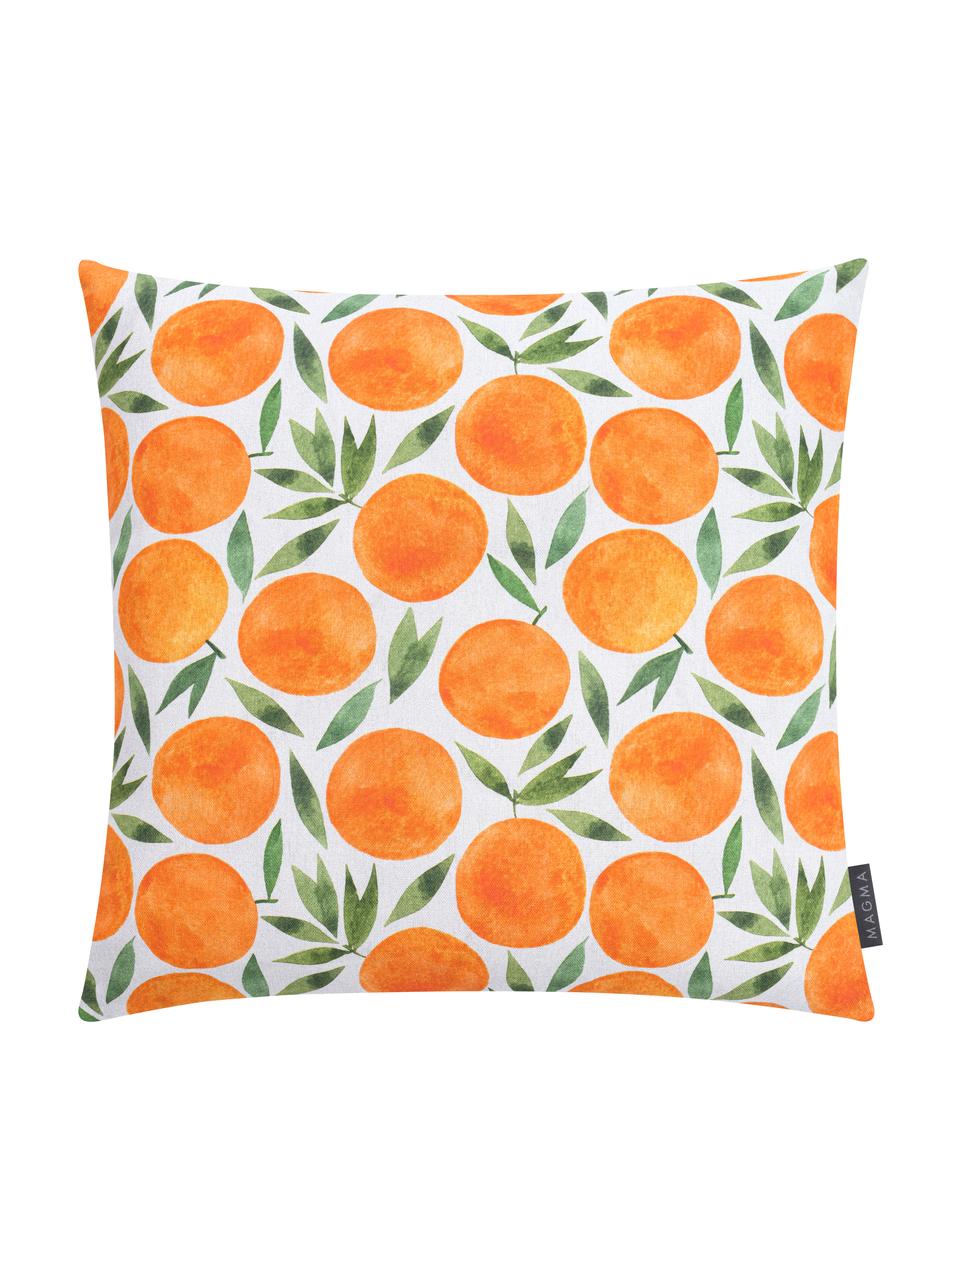 Kussenhoes Orange met zomers motief, Weeftechniek: half panama, Oranje, wit, groen, 50 x 50 cm